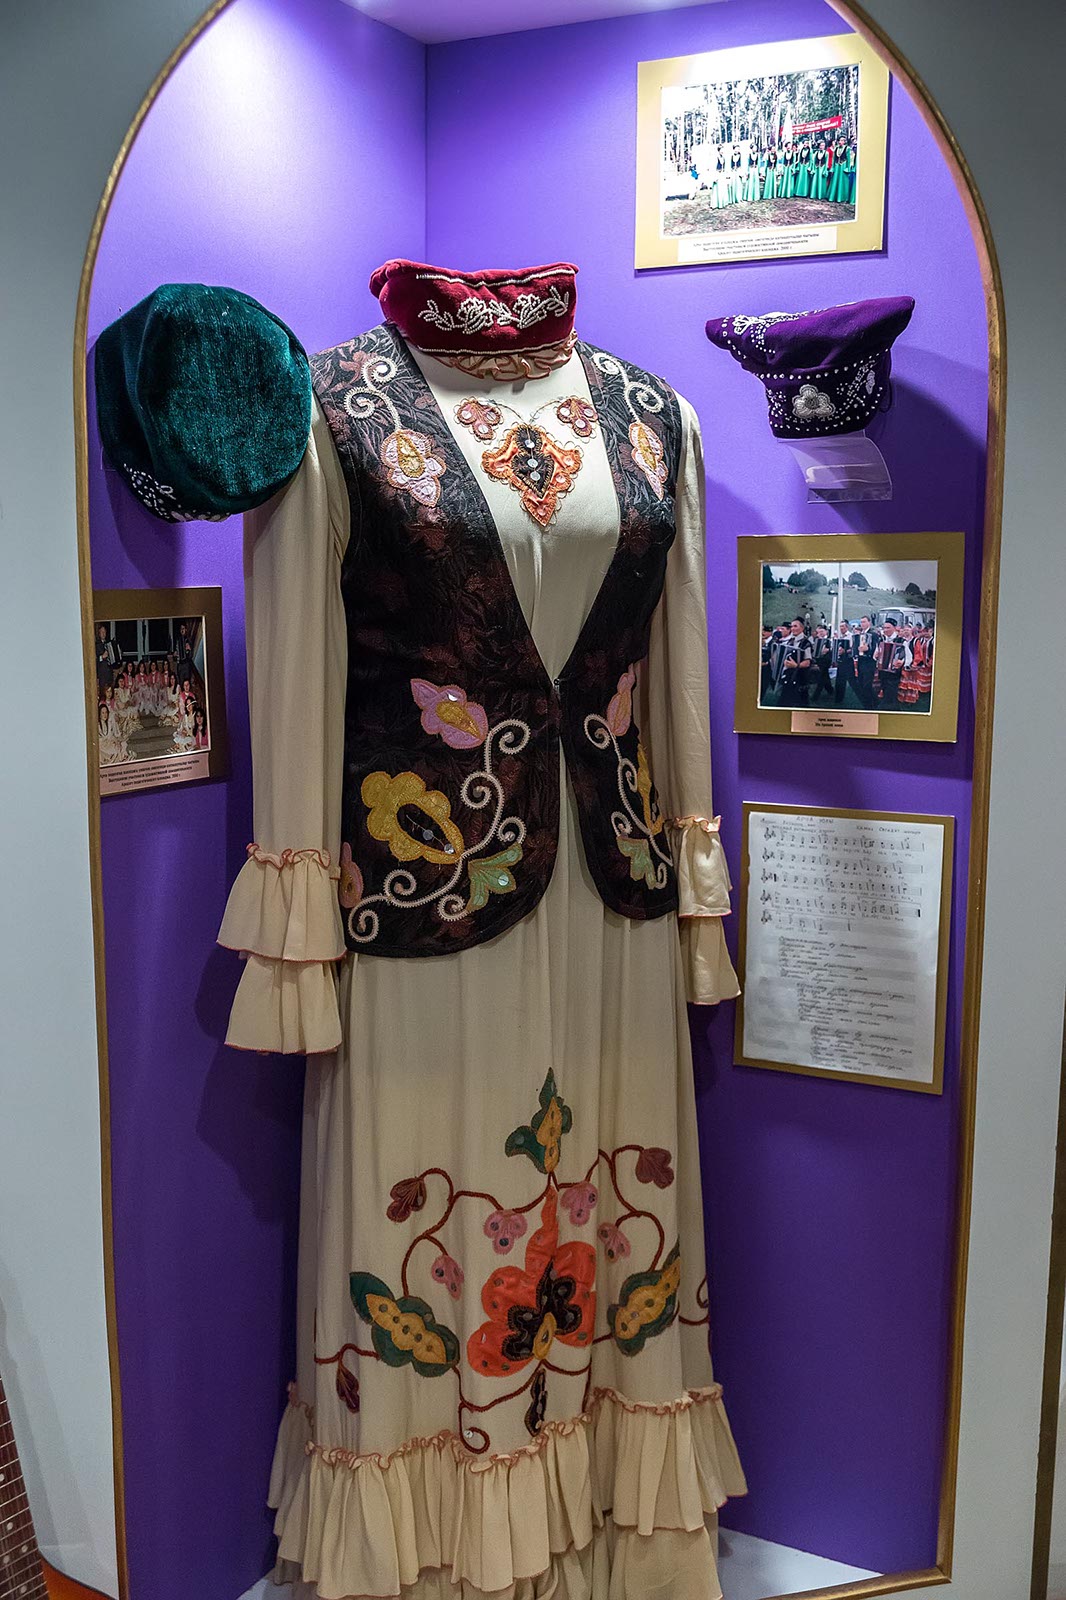 Татарские национальные костюмы для женщин